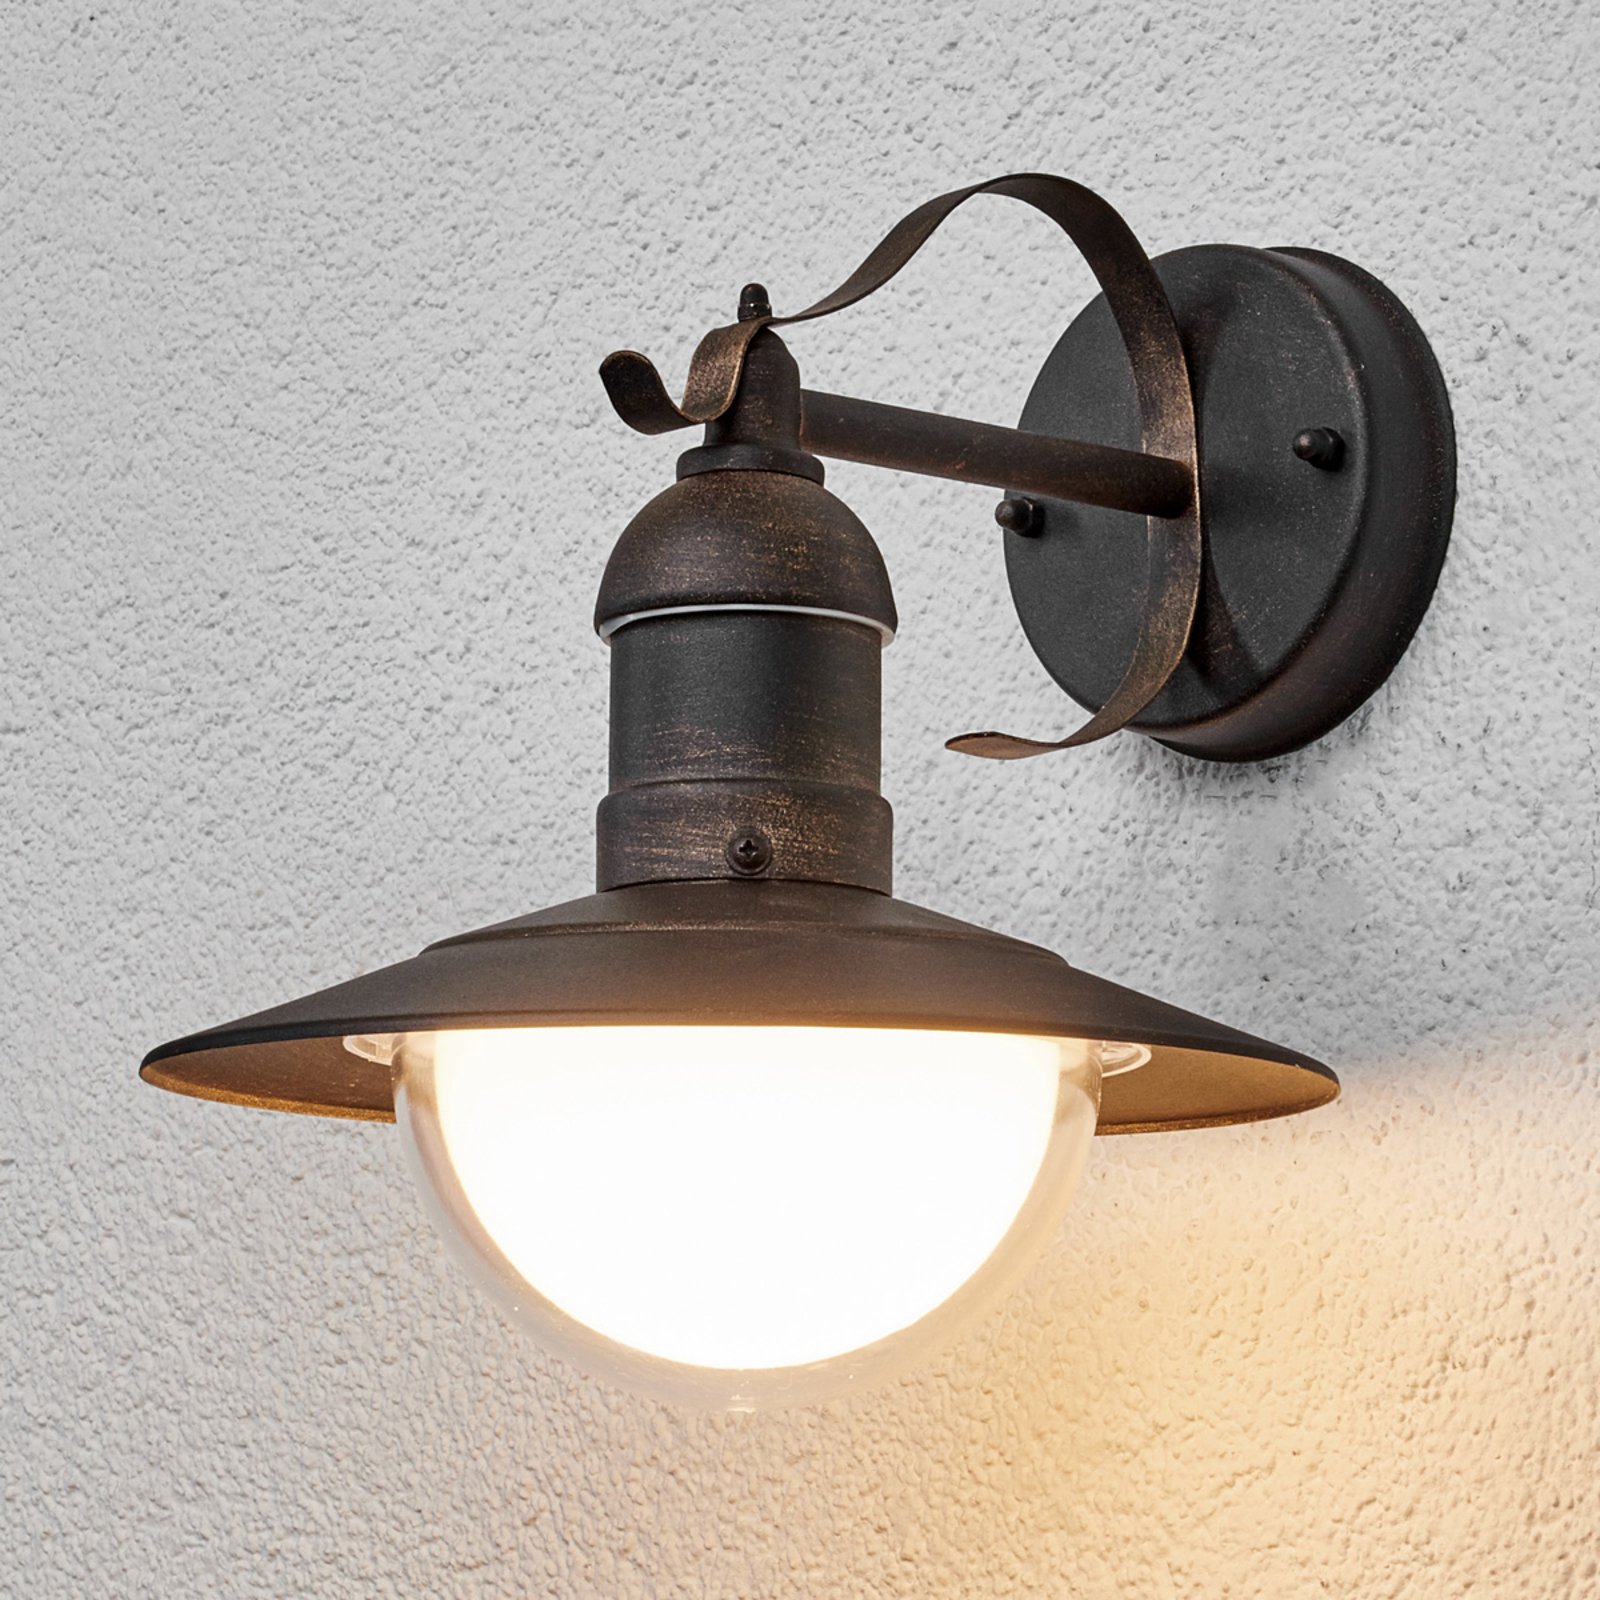 Vegghengt LED-utelampe Clea med antikt utseende